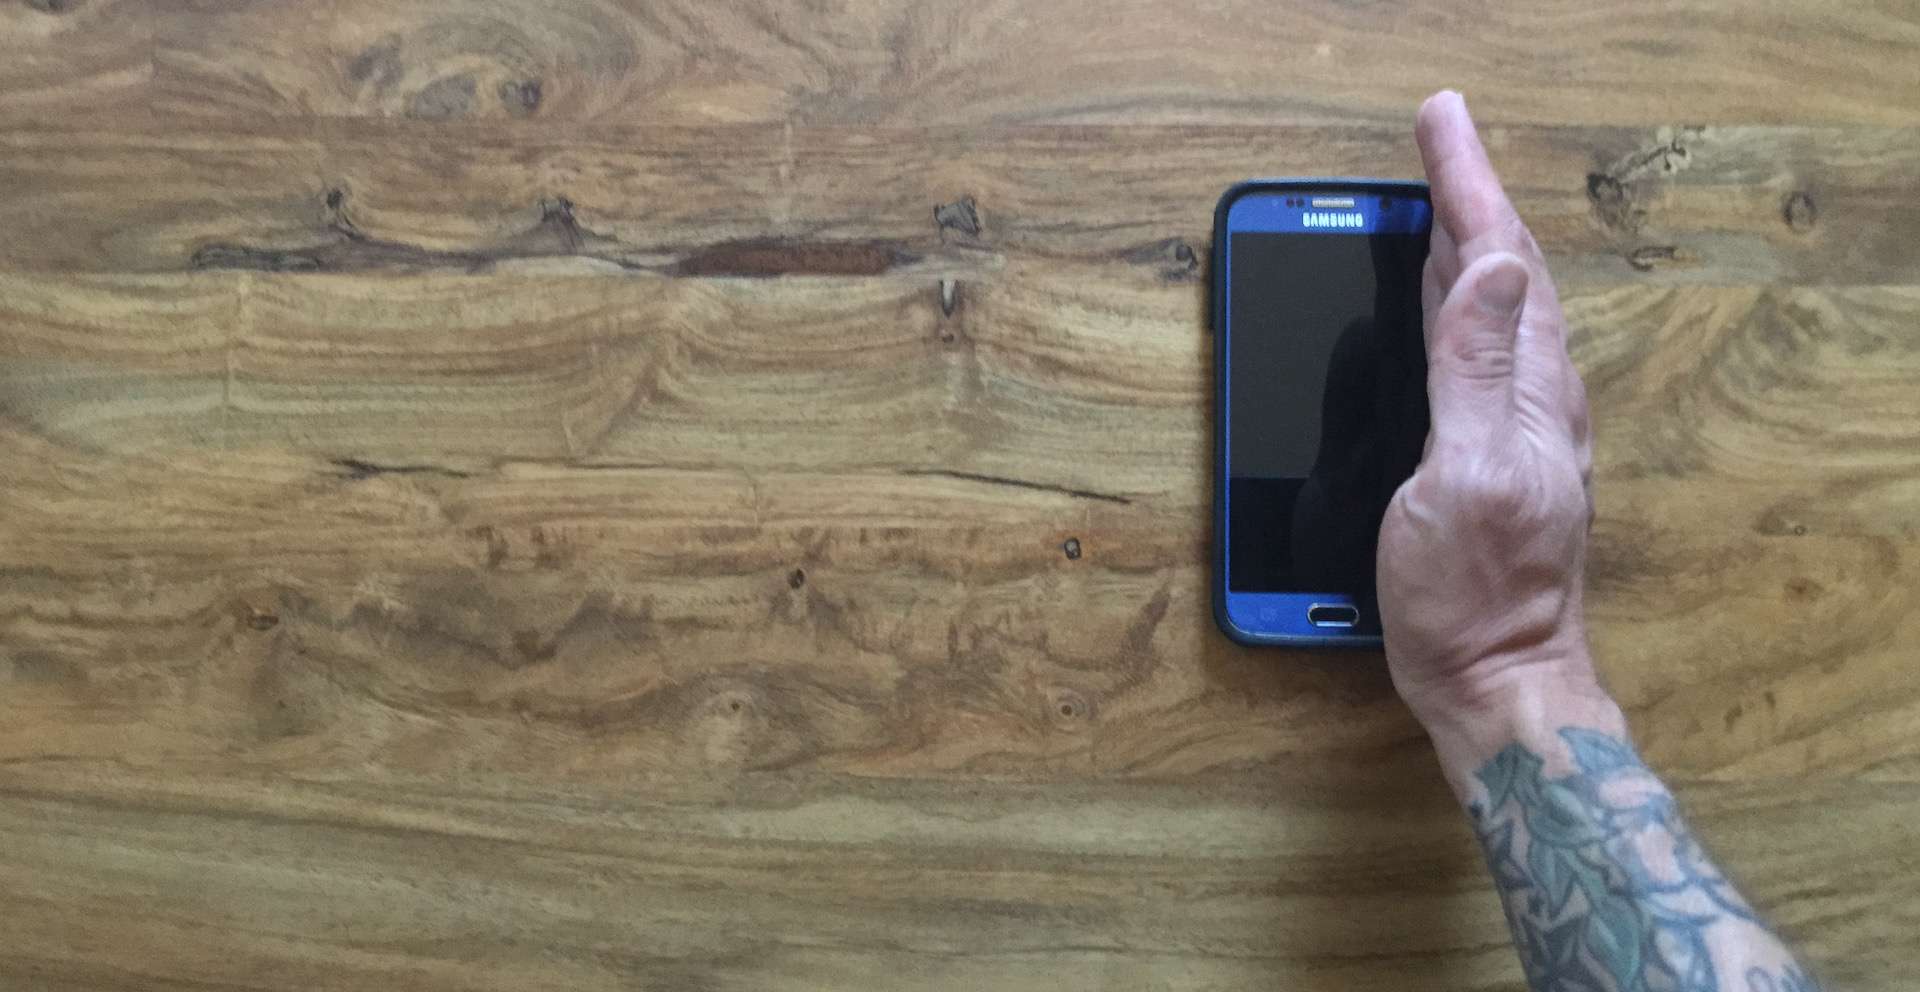 De hand van een man is verticaal op de rand van een Samsung S6.